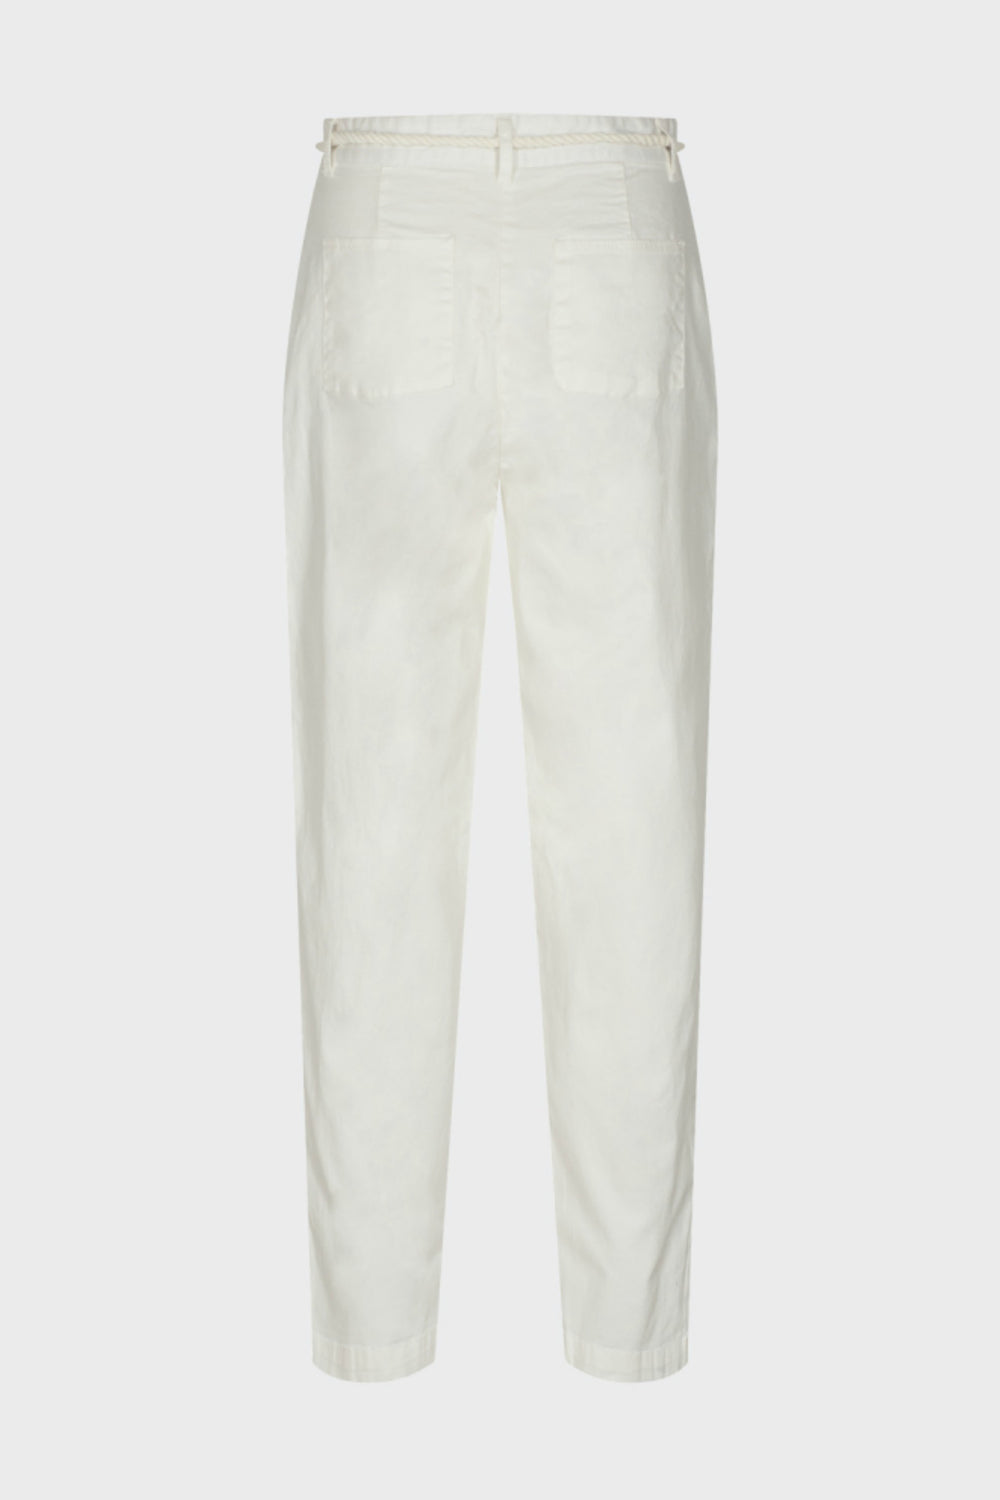 Minimum women's casual white pants for spring. Jolie folie boutique